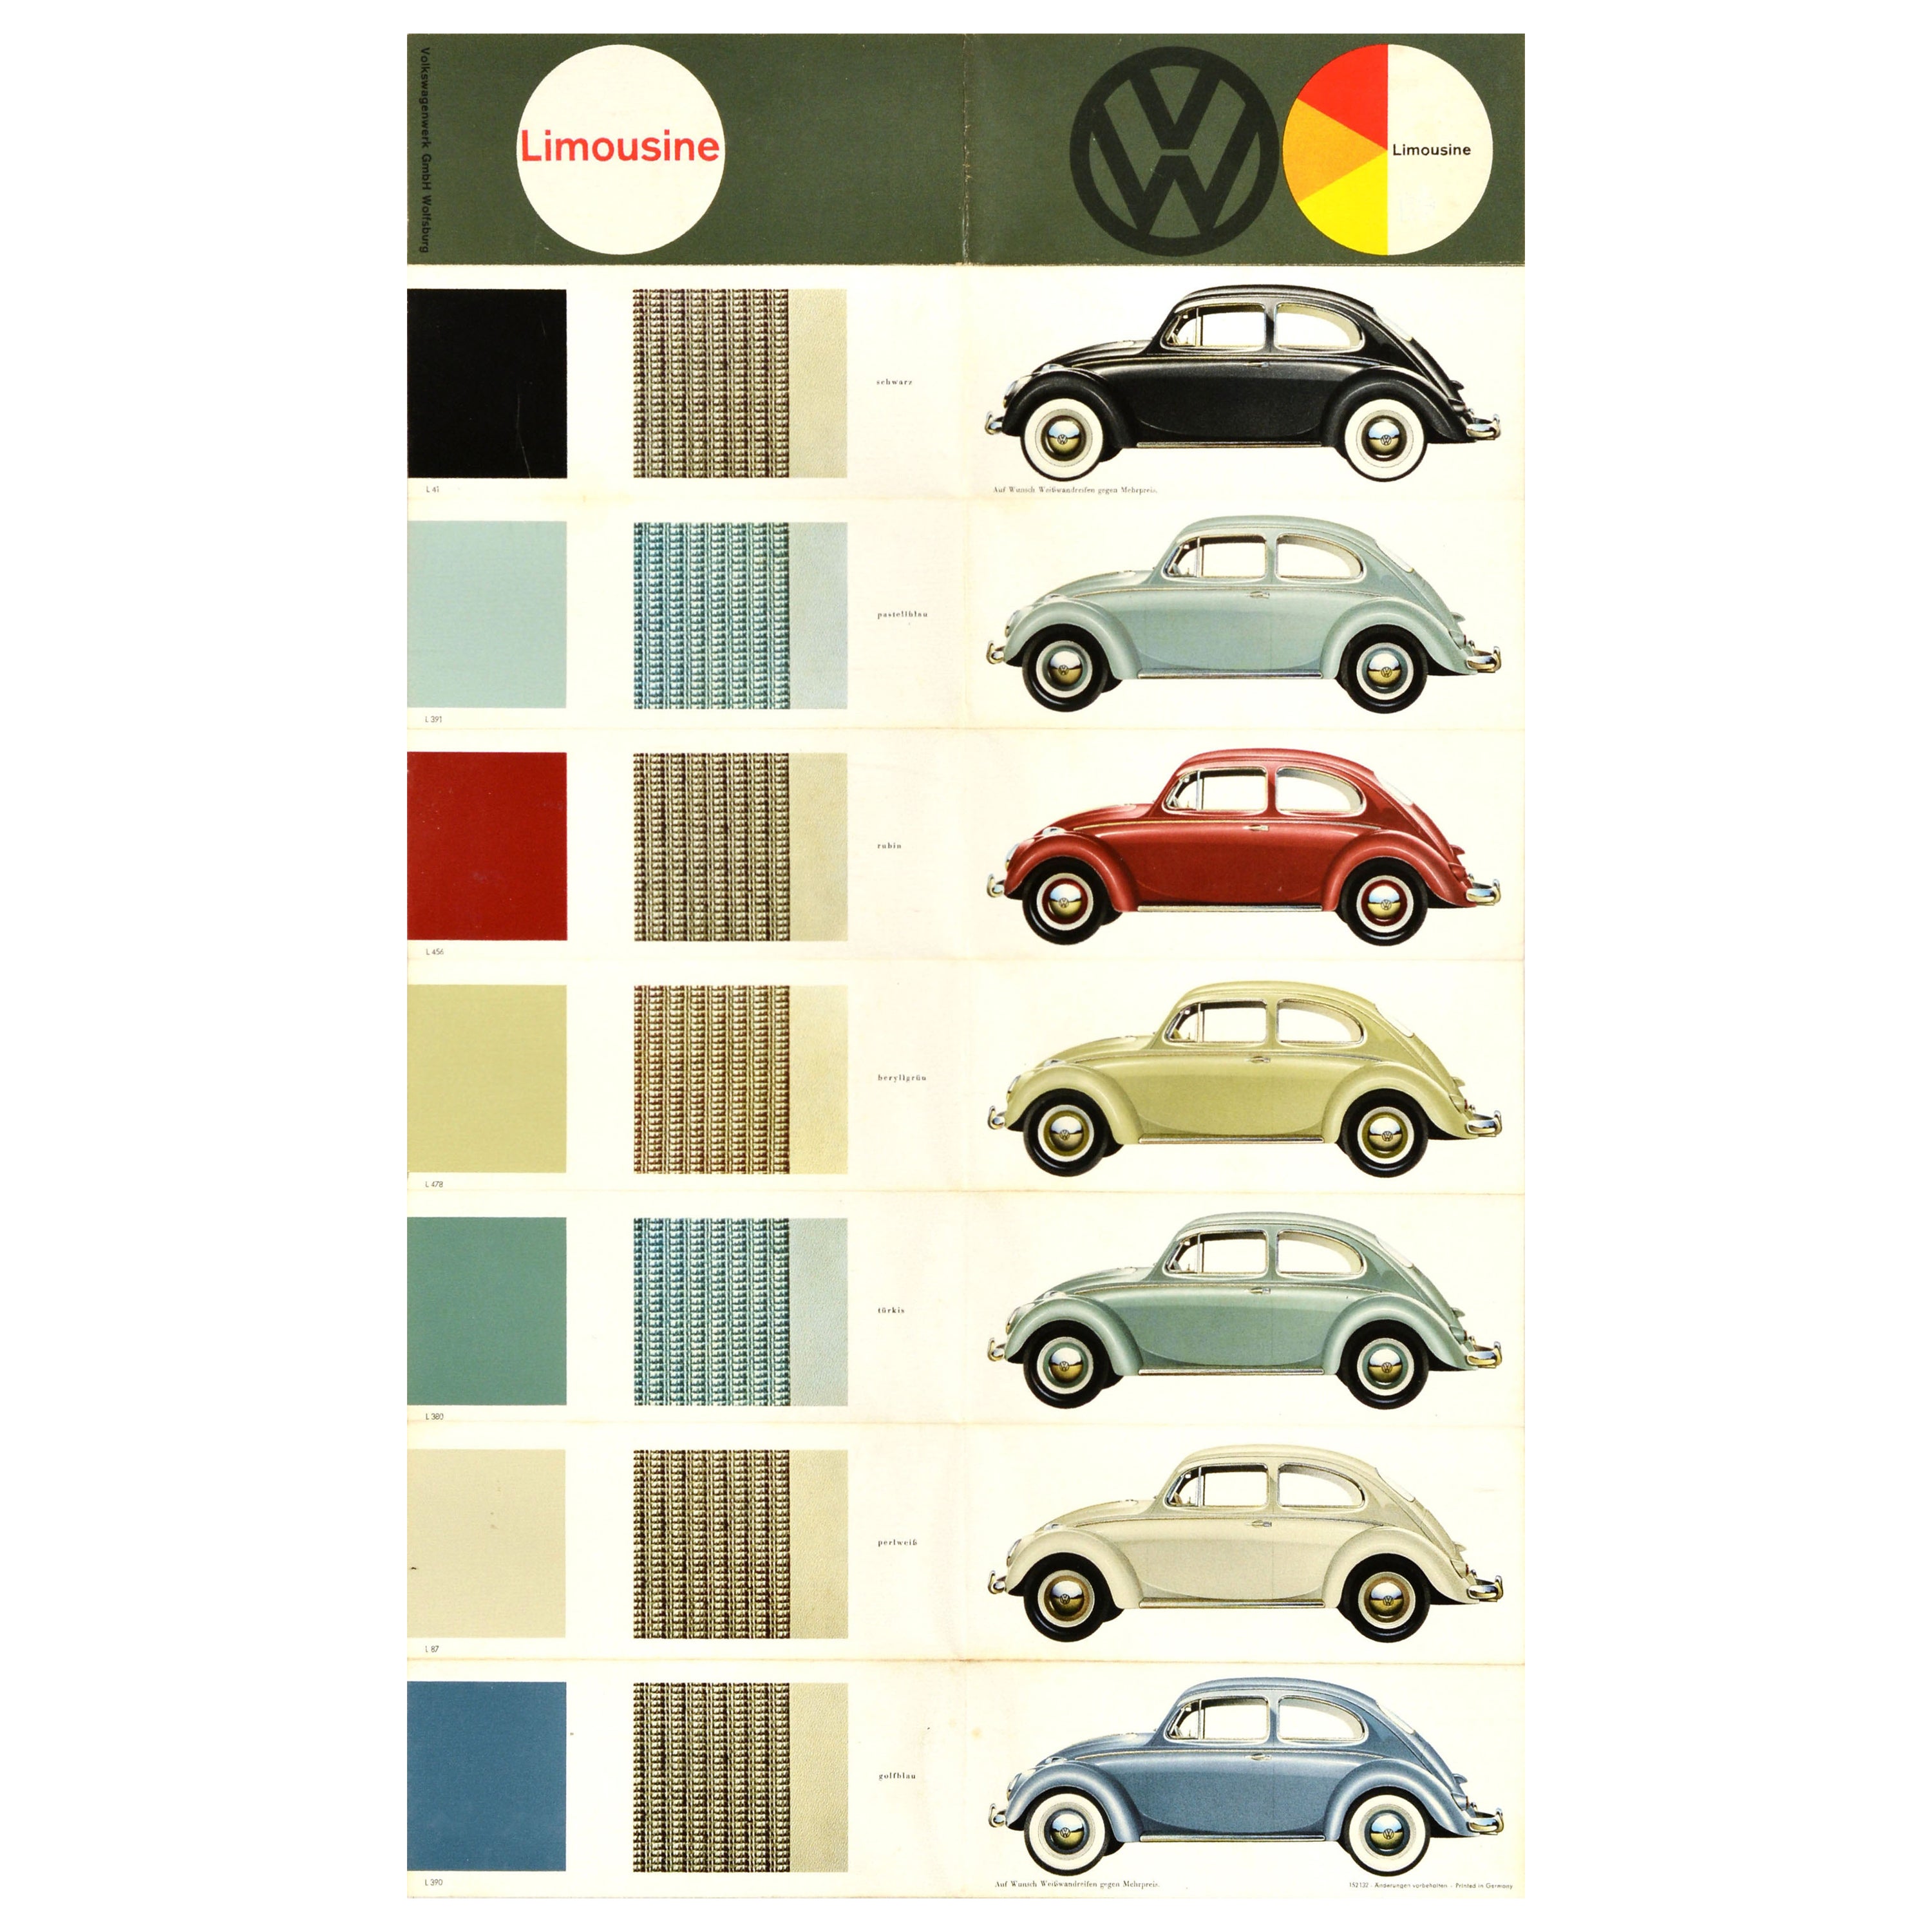 Affiche publicitaire originale vintage Volkswagen Limousine VW automobile rétro